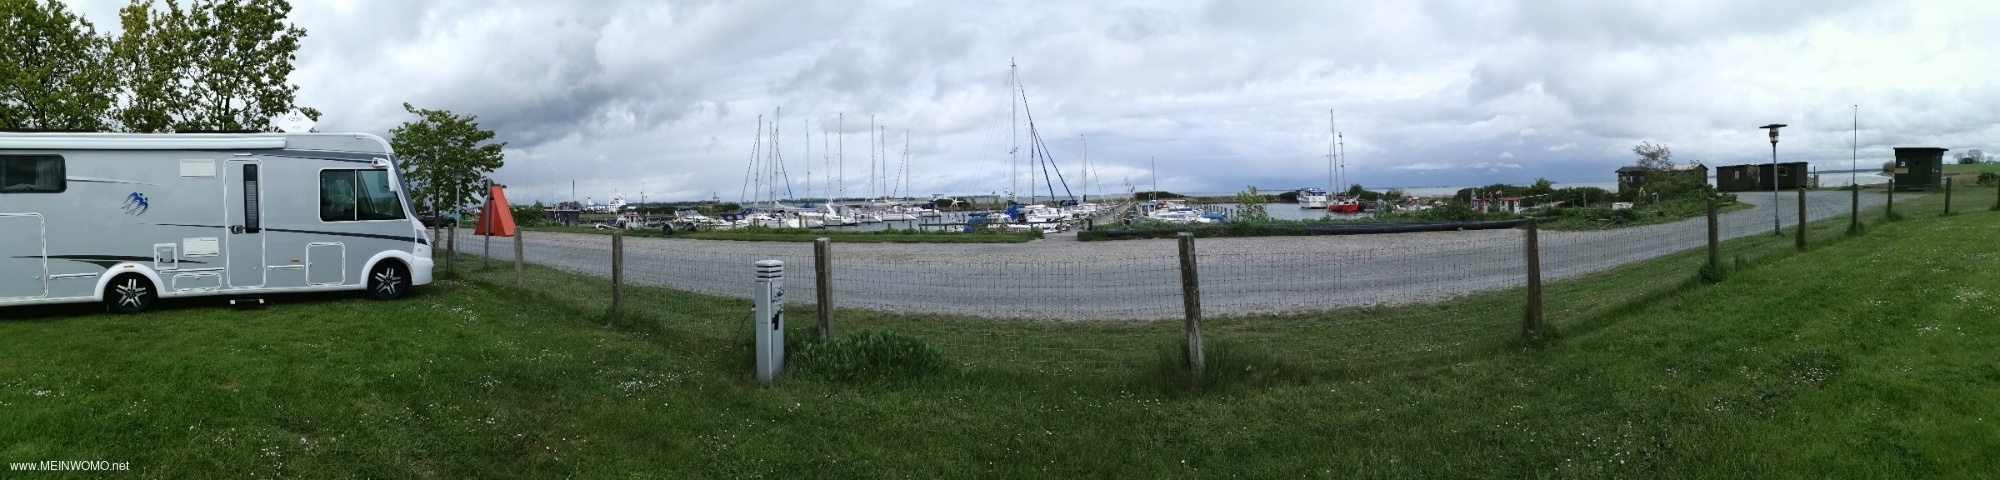  visar parkeringsplats p vgen framfr hamnen  